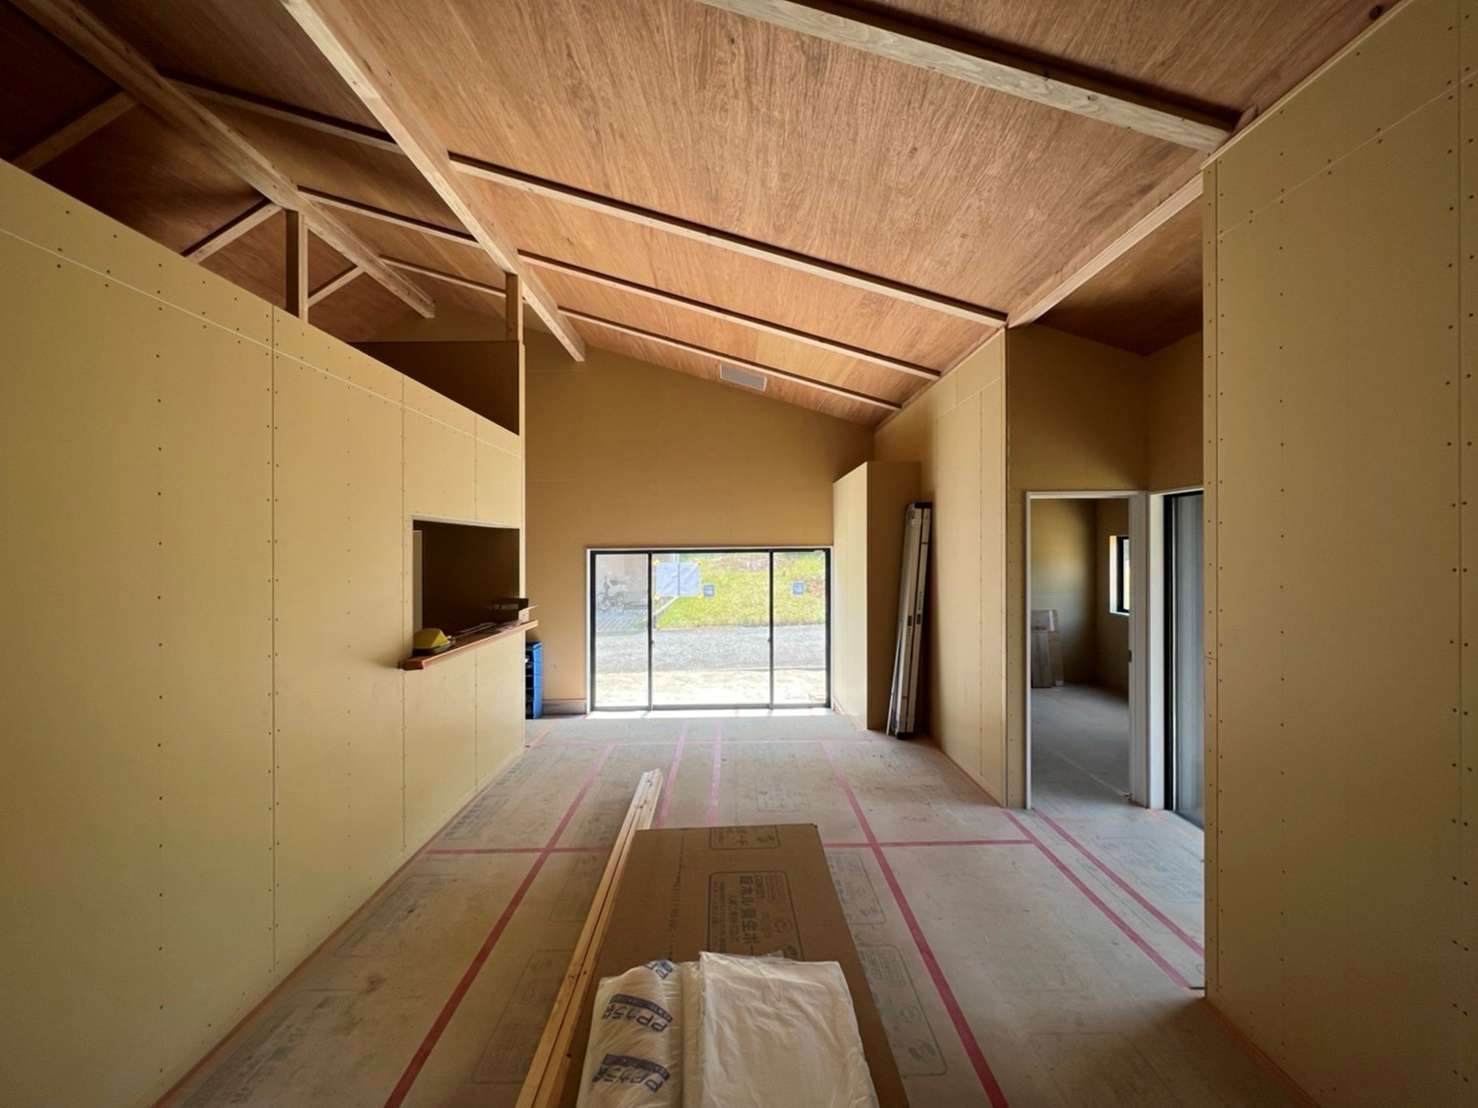 東広島市でおしゃれな注文住宅、おしゃれなリノベーションそして平屋の新築は設計事務所 asazu design office